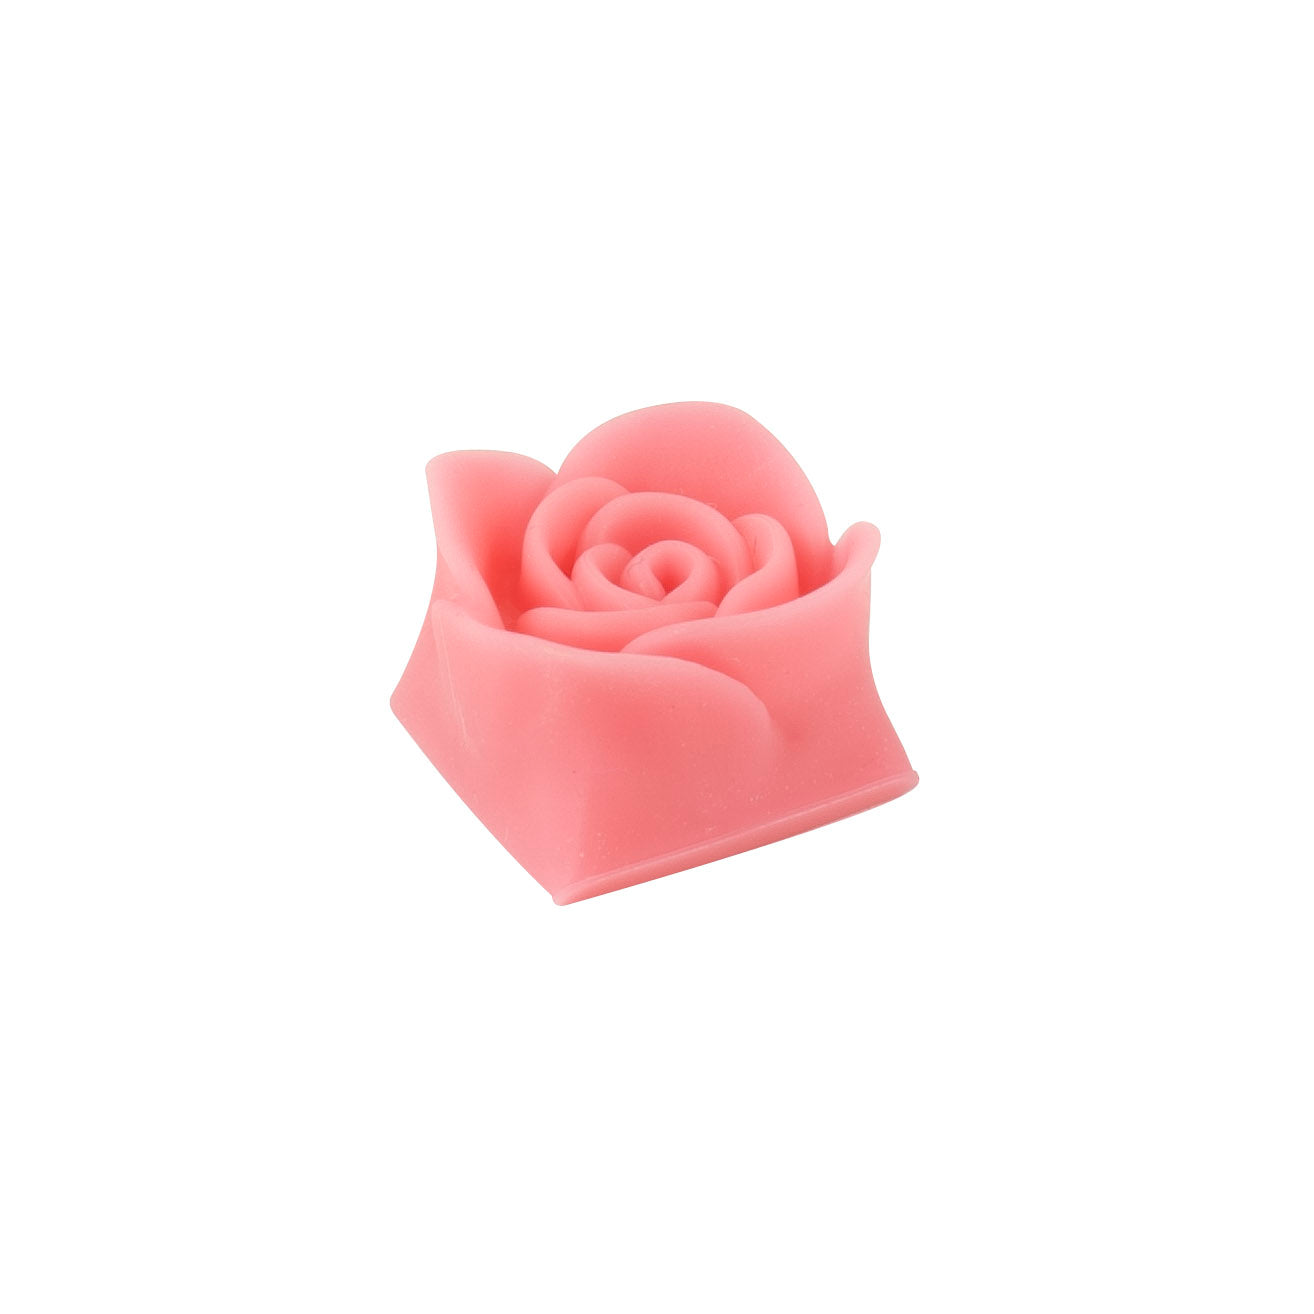 Capsmiths Rose Laser Pink 3D Printed Artisan Keycap MKNPT79NT2 |27804|